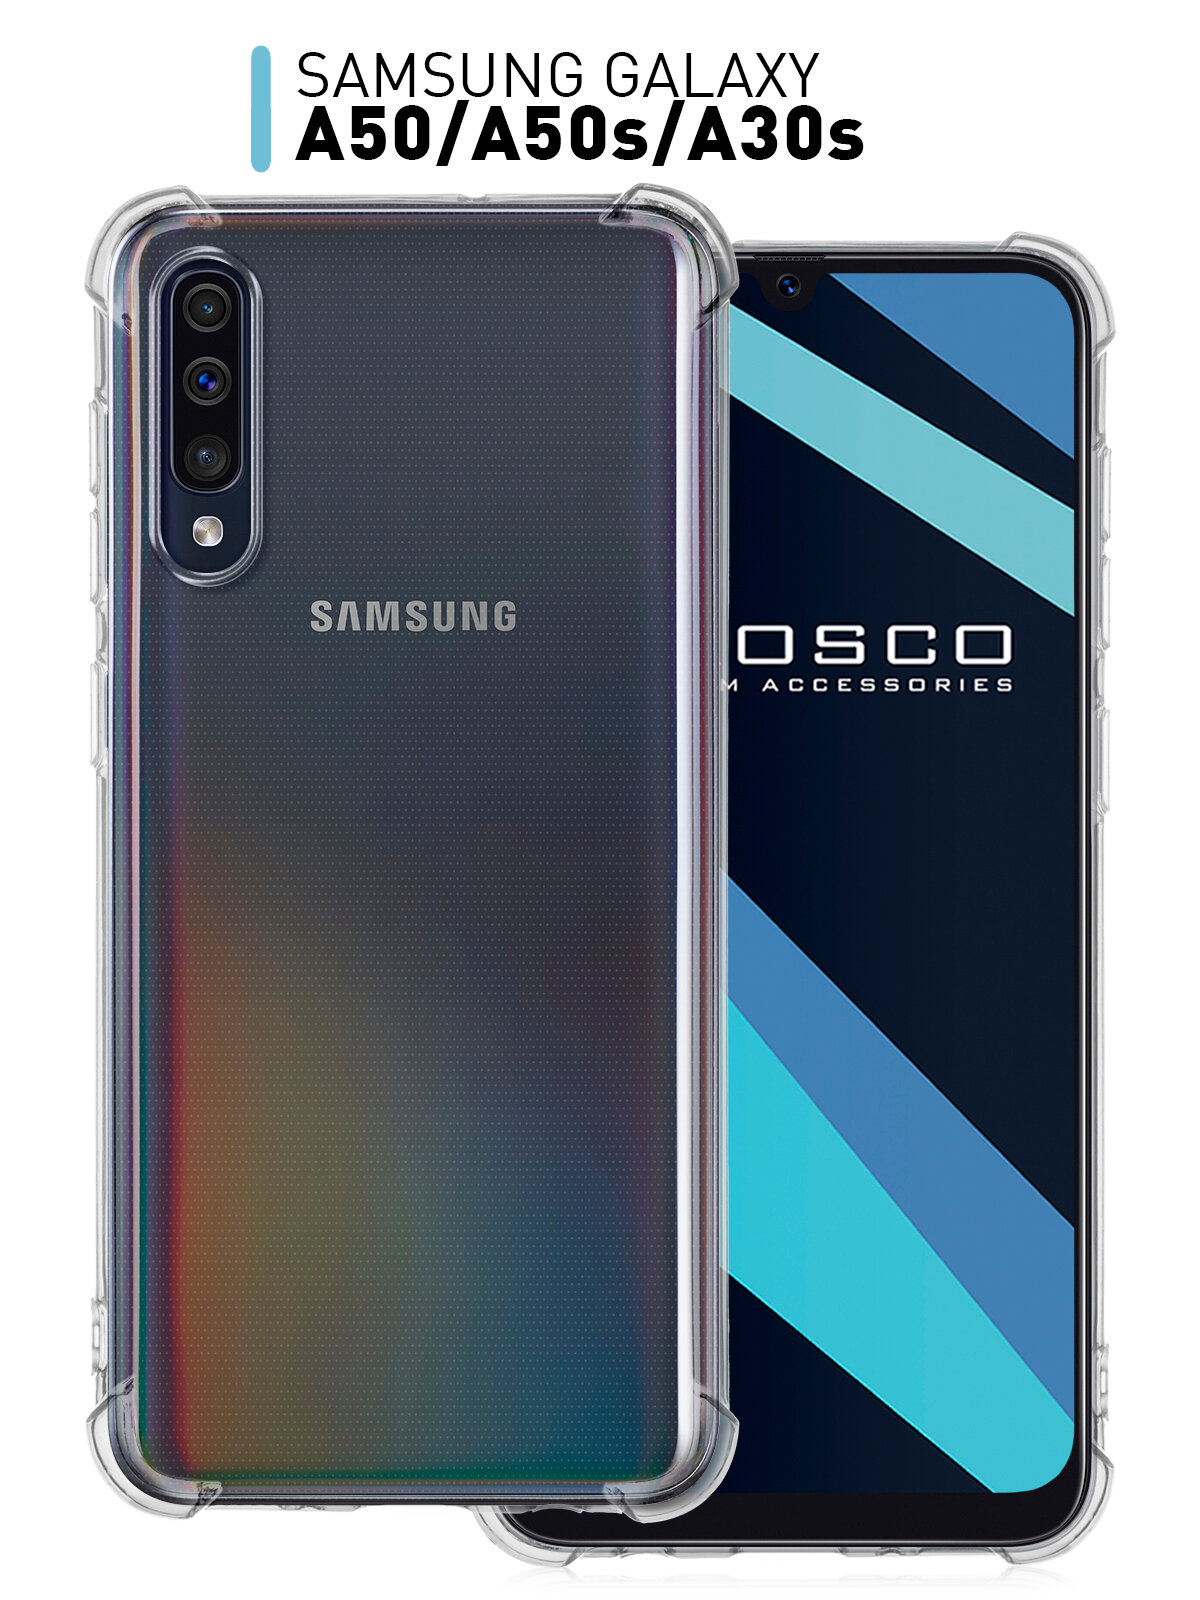 Противоударный силиконовый чехол ROSCO для Samsung Galaxy A50 Galaxy A50S и Galaxy A30S (Самсунг Галакси А 50 Галакси А 50 С и Галакси А 30 С) с усиленными углами